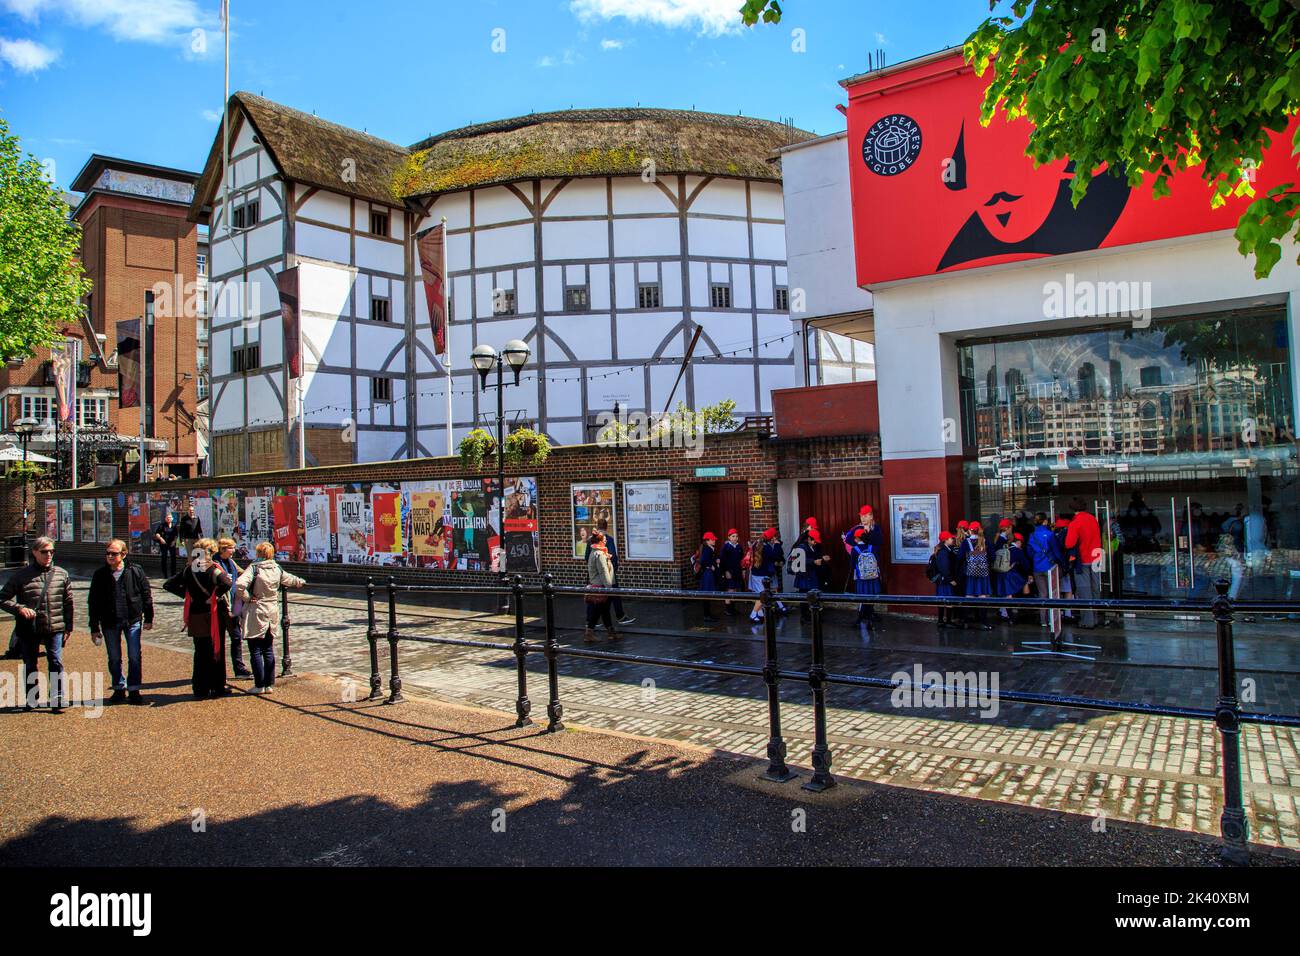 LONDRES, GRANDE-BRETAGNE - MAI 13. 2014: C'est le nouveau Théâtre du Globe de Shakespeare, qui a été construit selon l'ancien plan sur le site de l'histor Banque D'Images